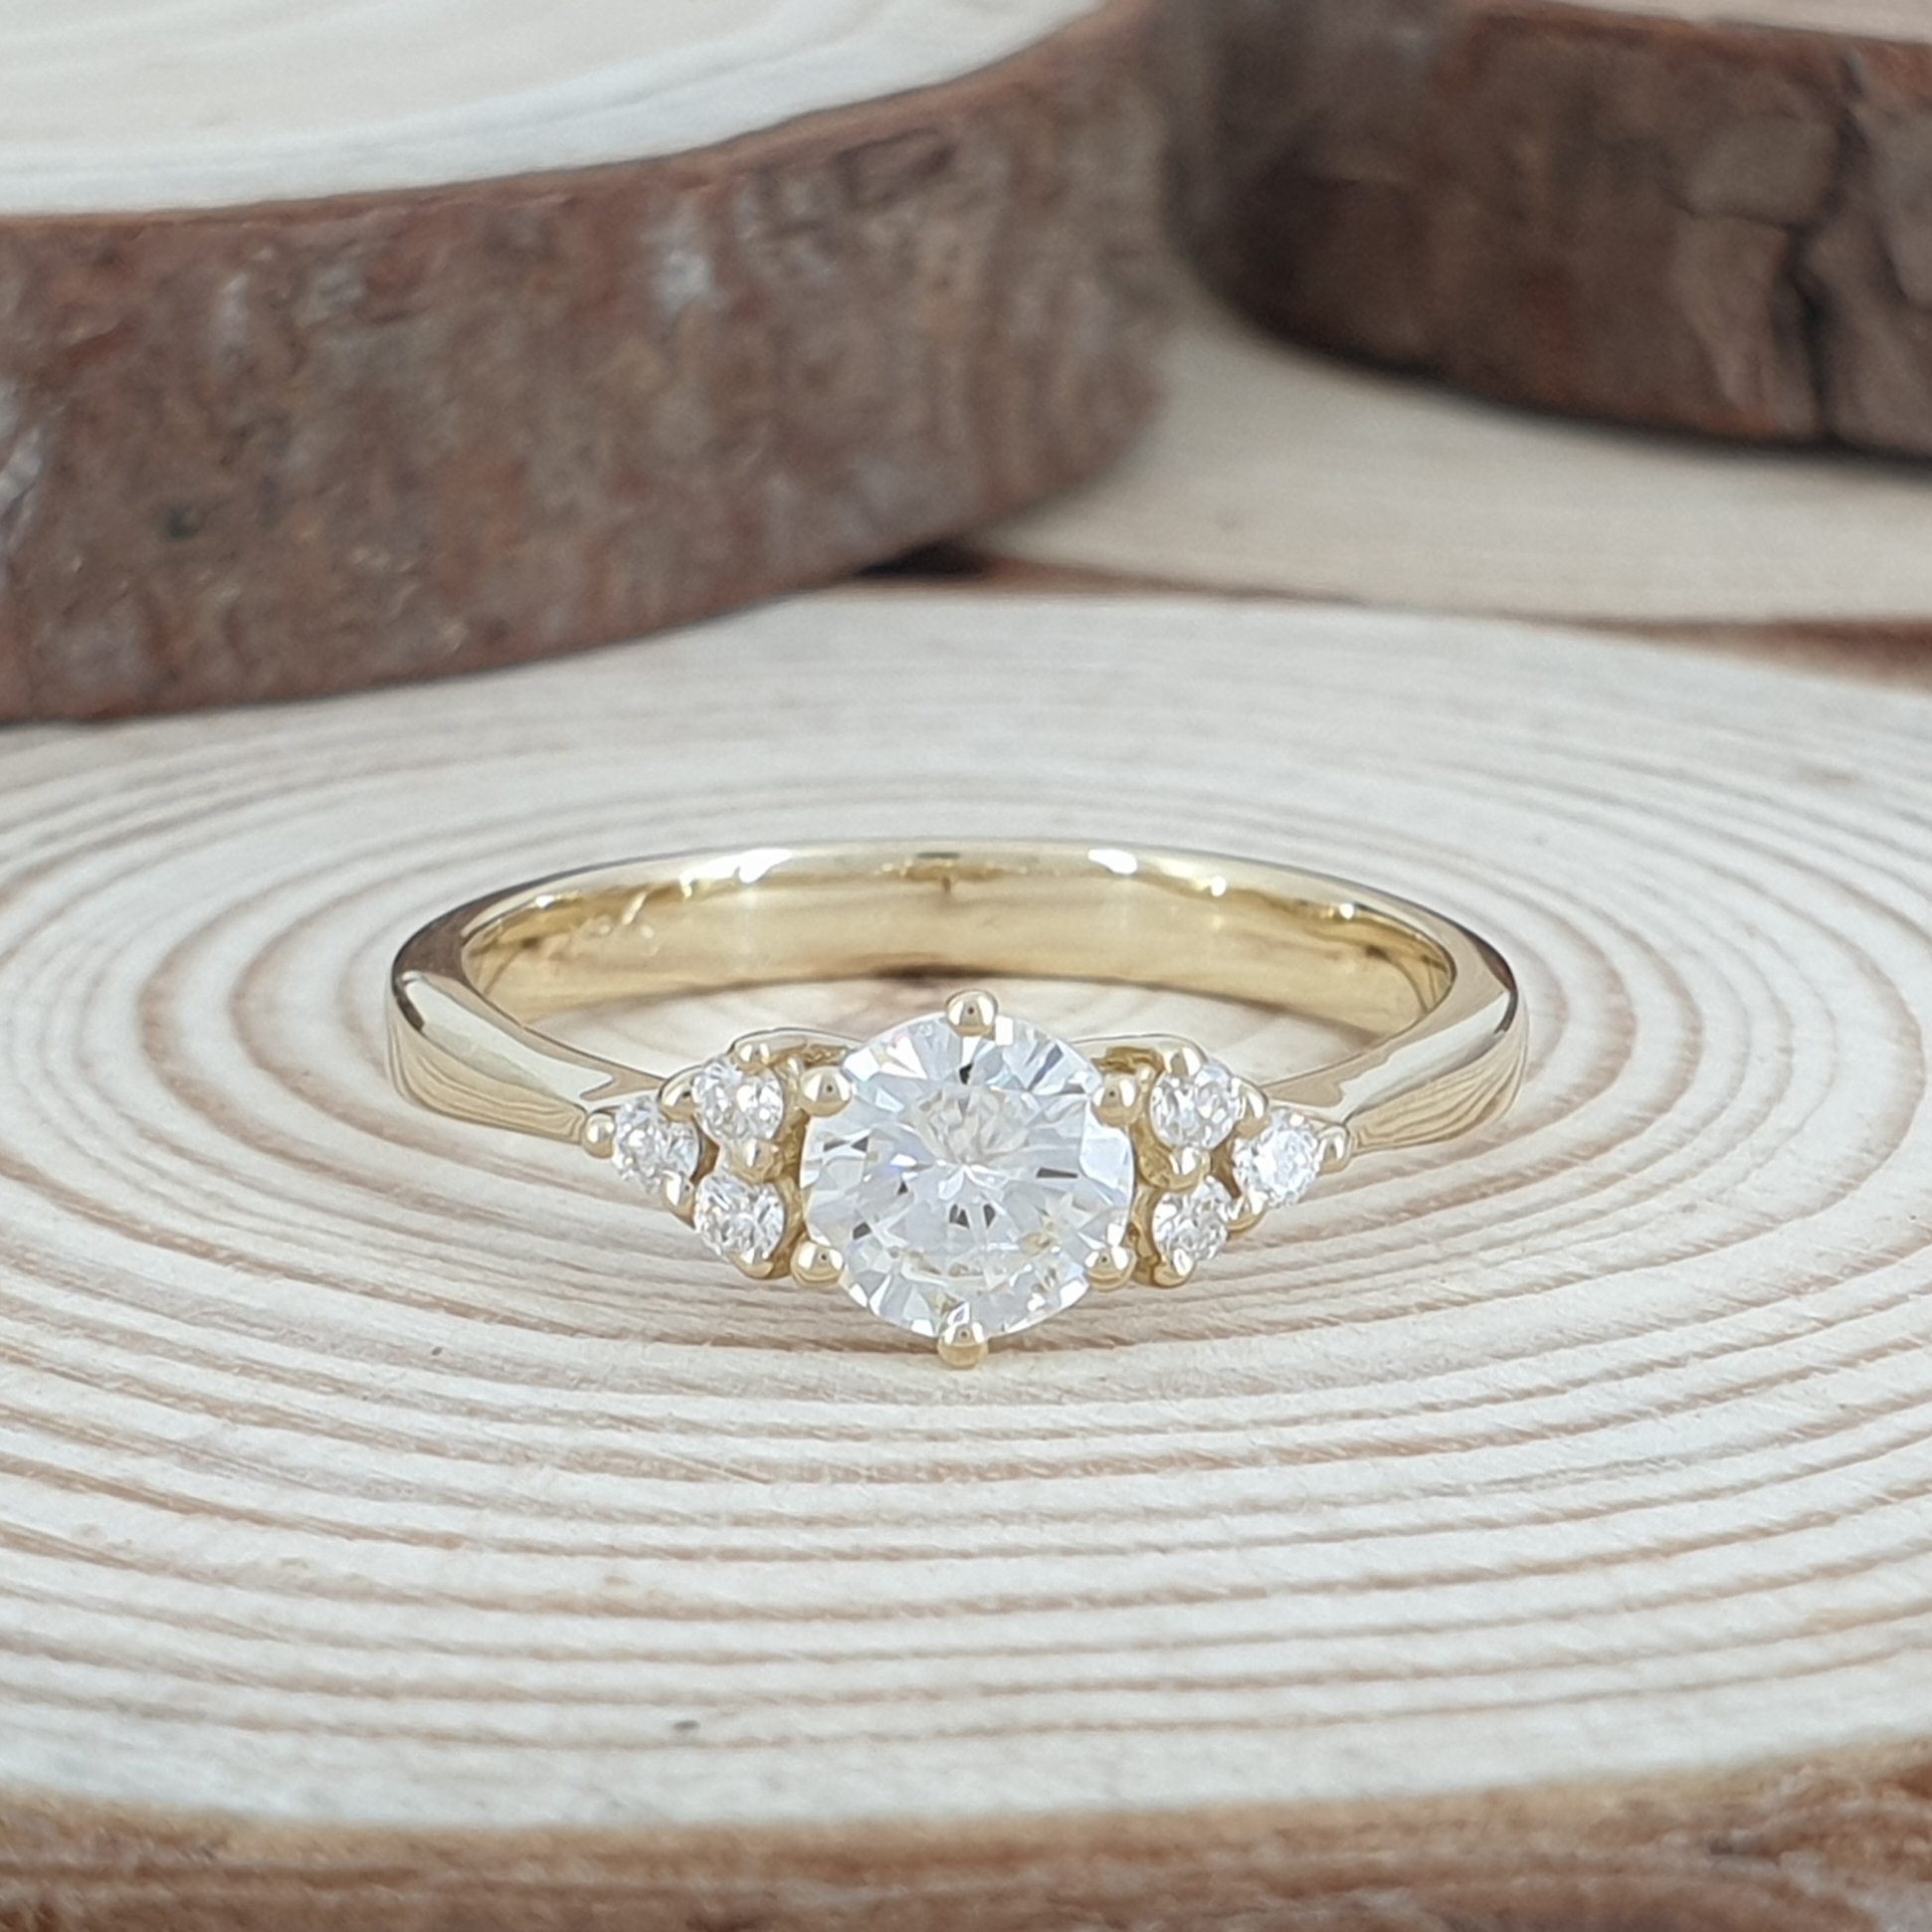 תמונה אמיתית של טבעת אירוסין יוקרתית בעיצוב ייחודי